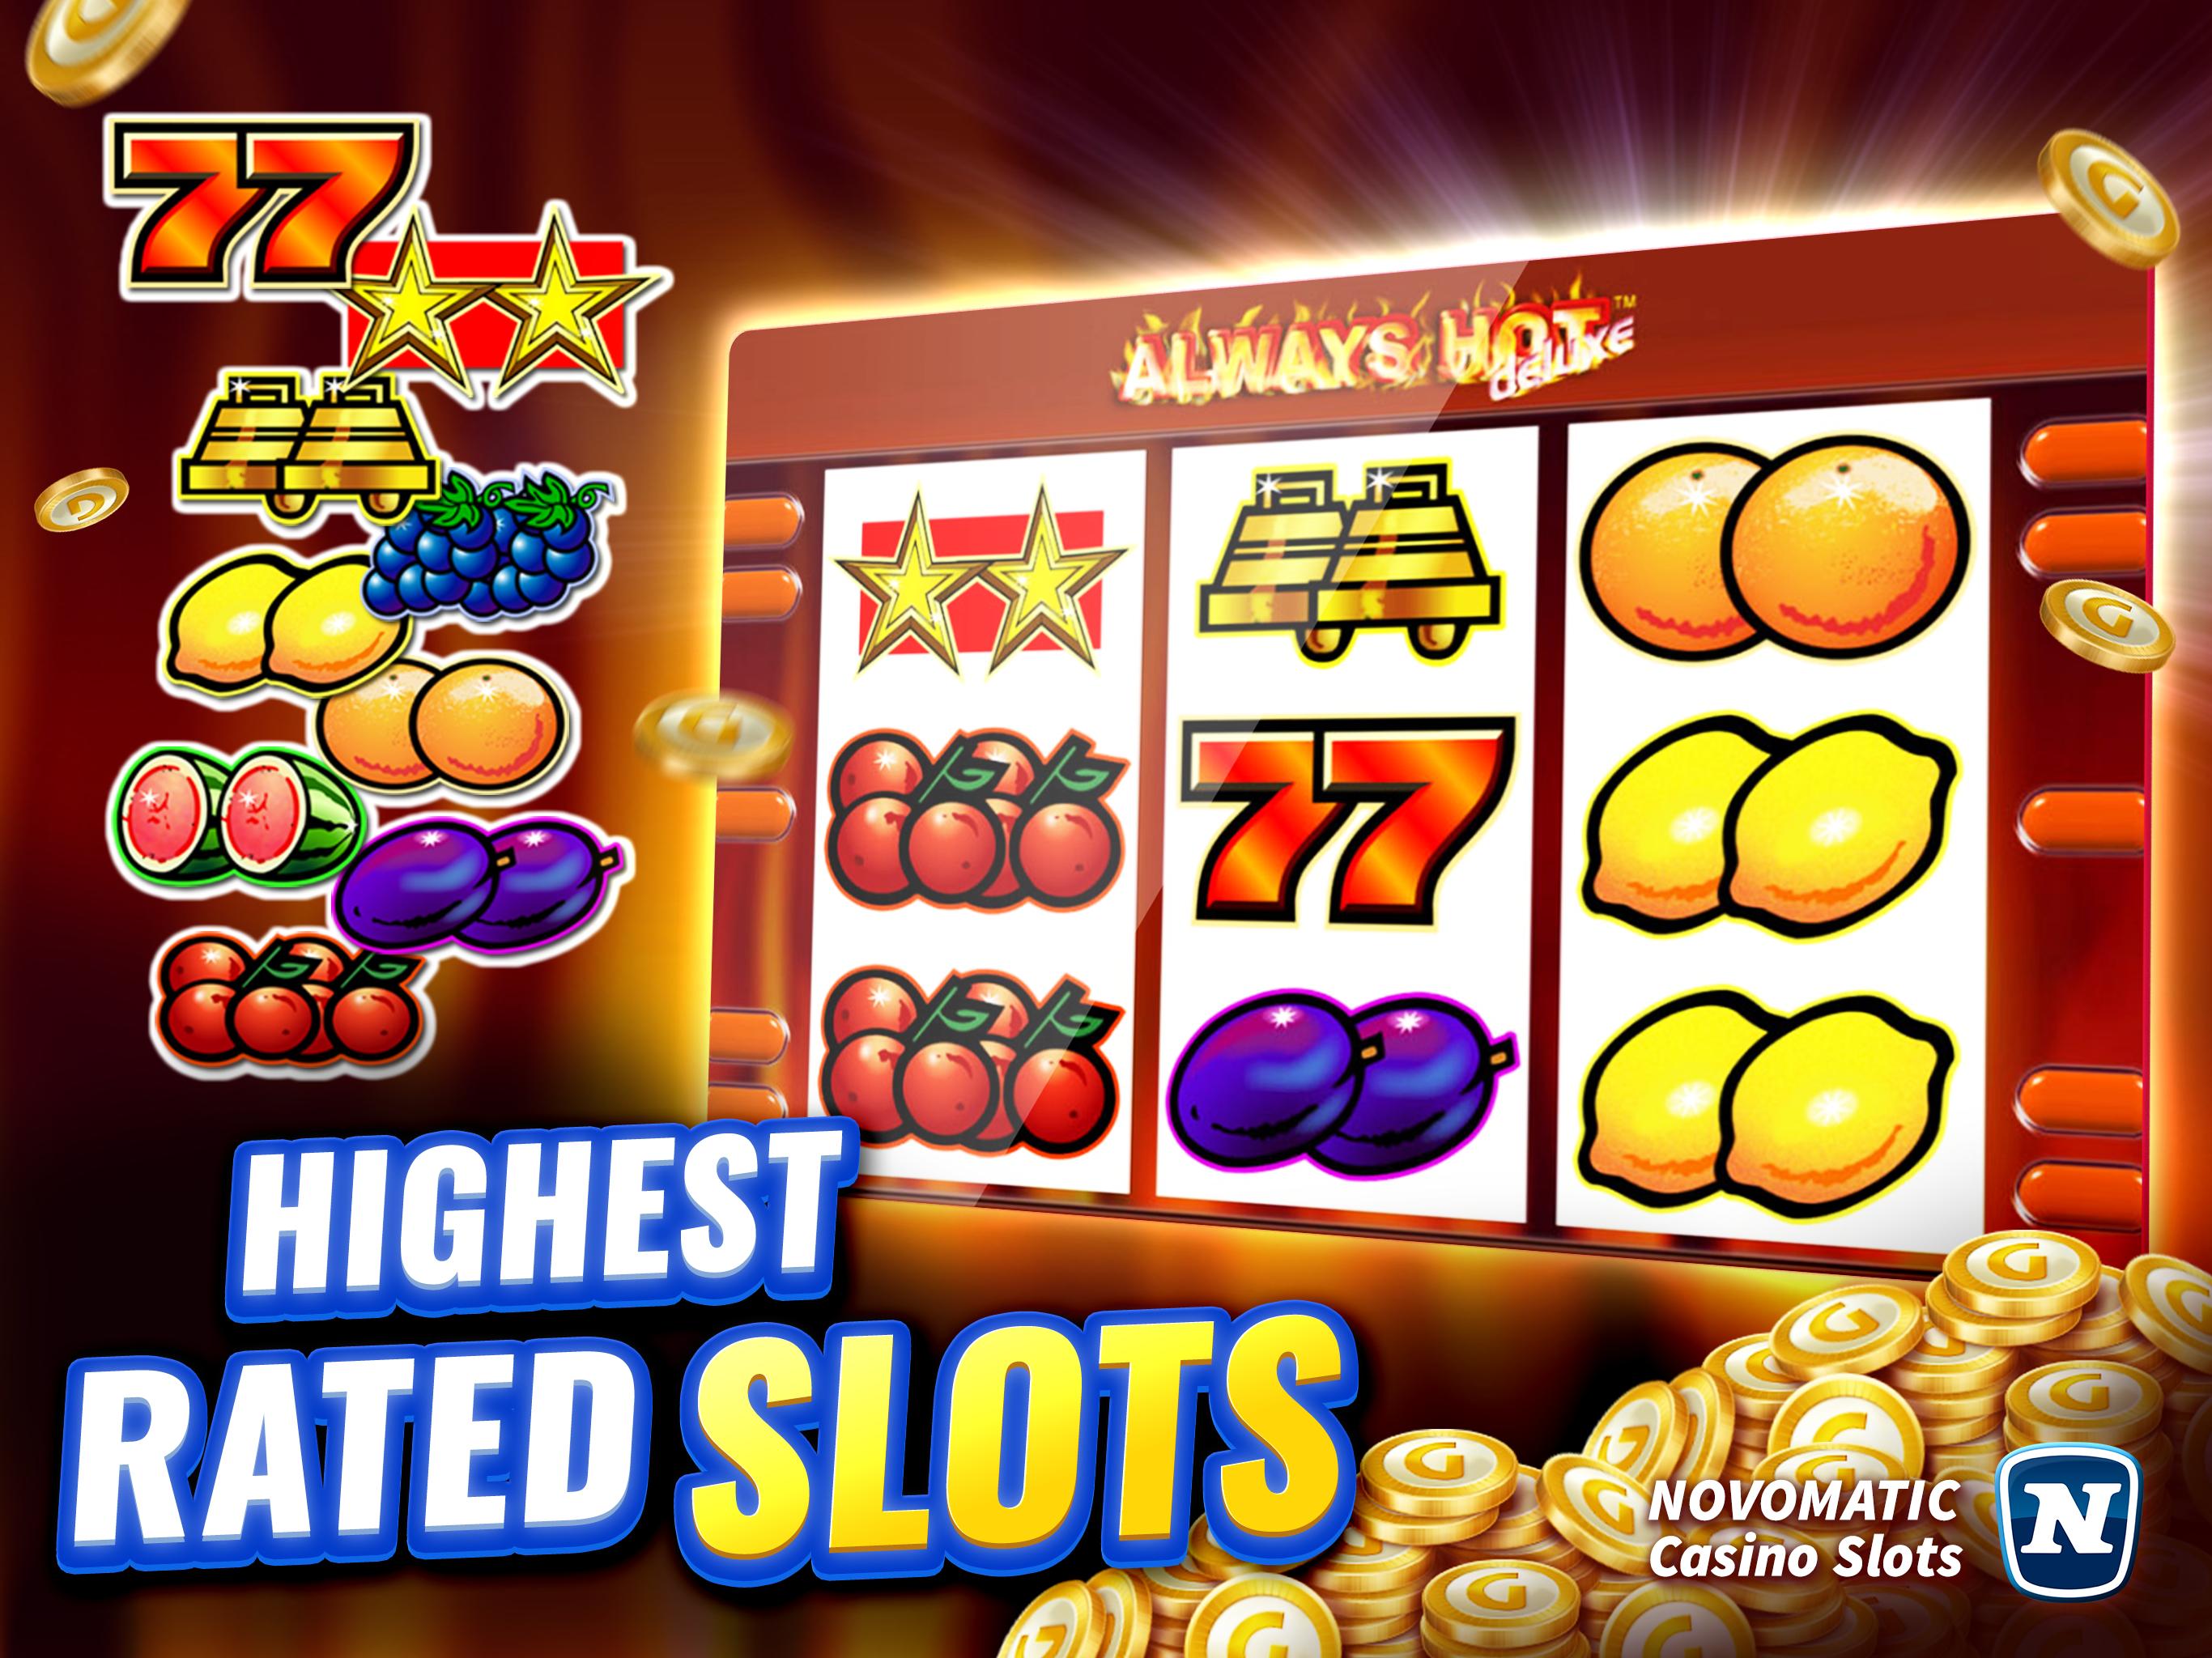 Gaminator Casino Slots - Play Slot Machines 777 3.21.1 Screenshot 15